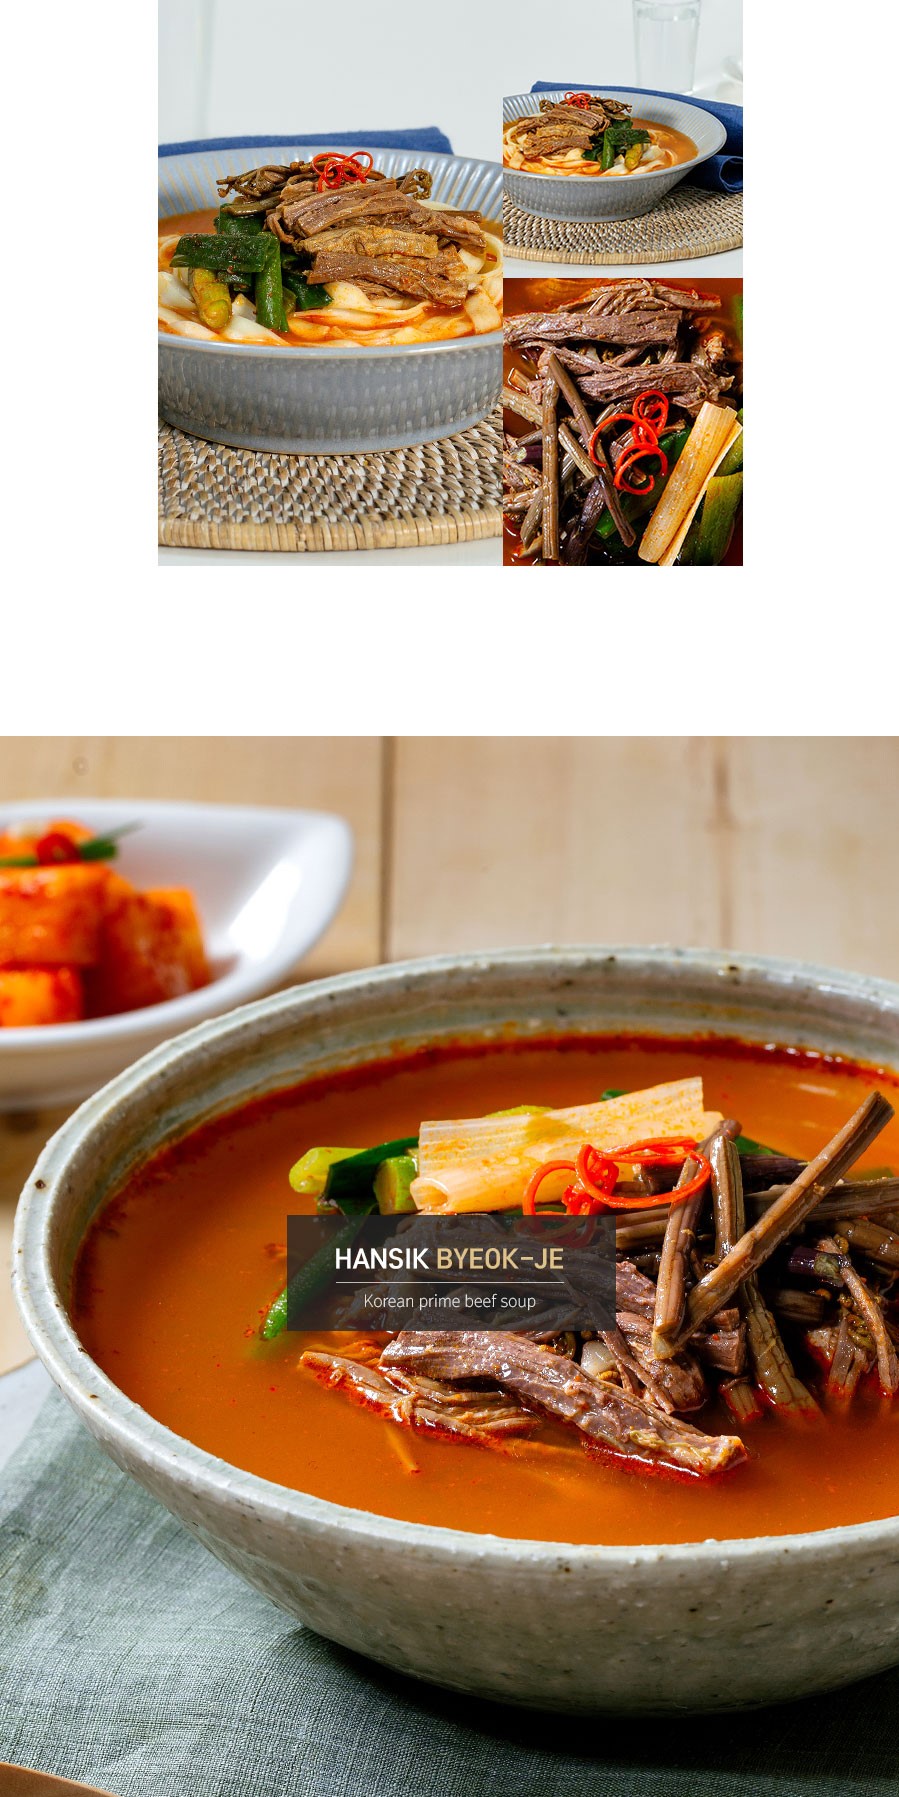 韓國食品-[ByeokJeGalbi] Hanwoo Spicy Beef Soup 500g